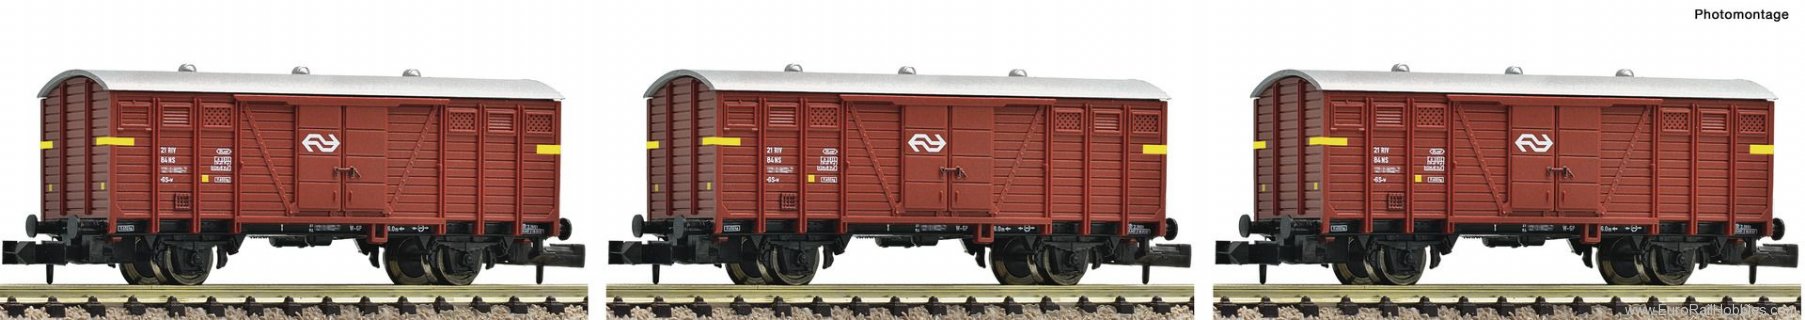 Fleischmann 833303 3 piece set: General cargo transport, NS